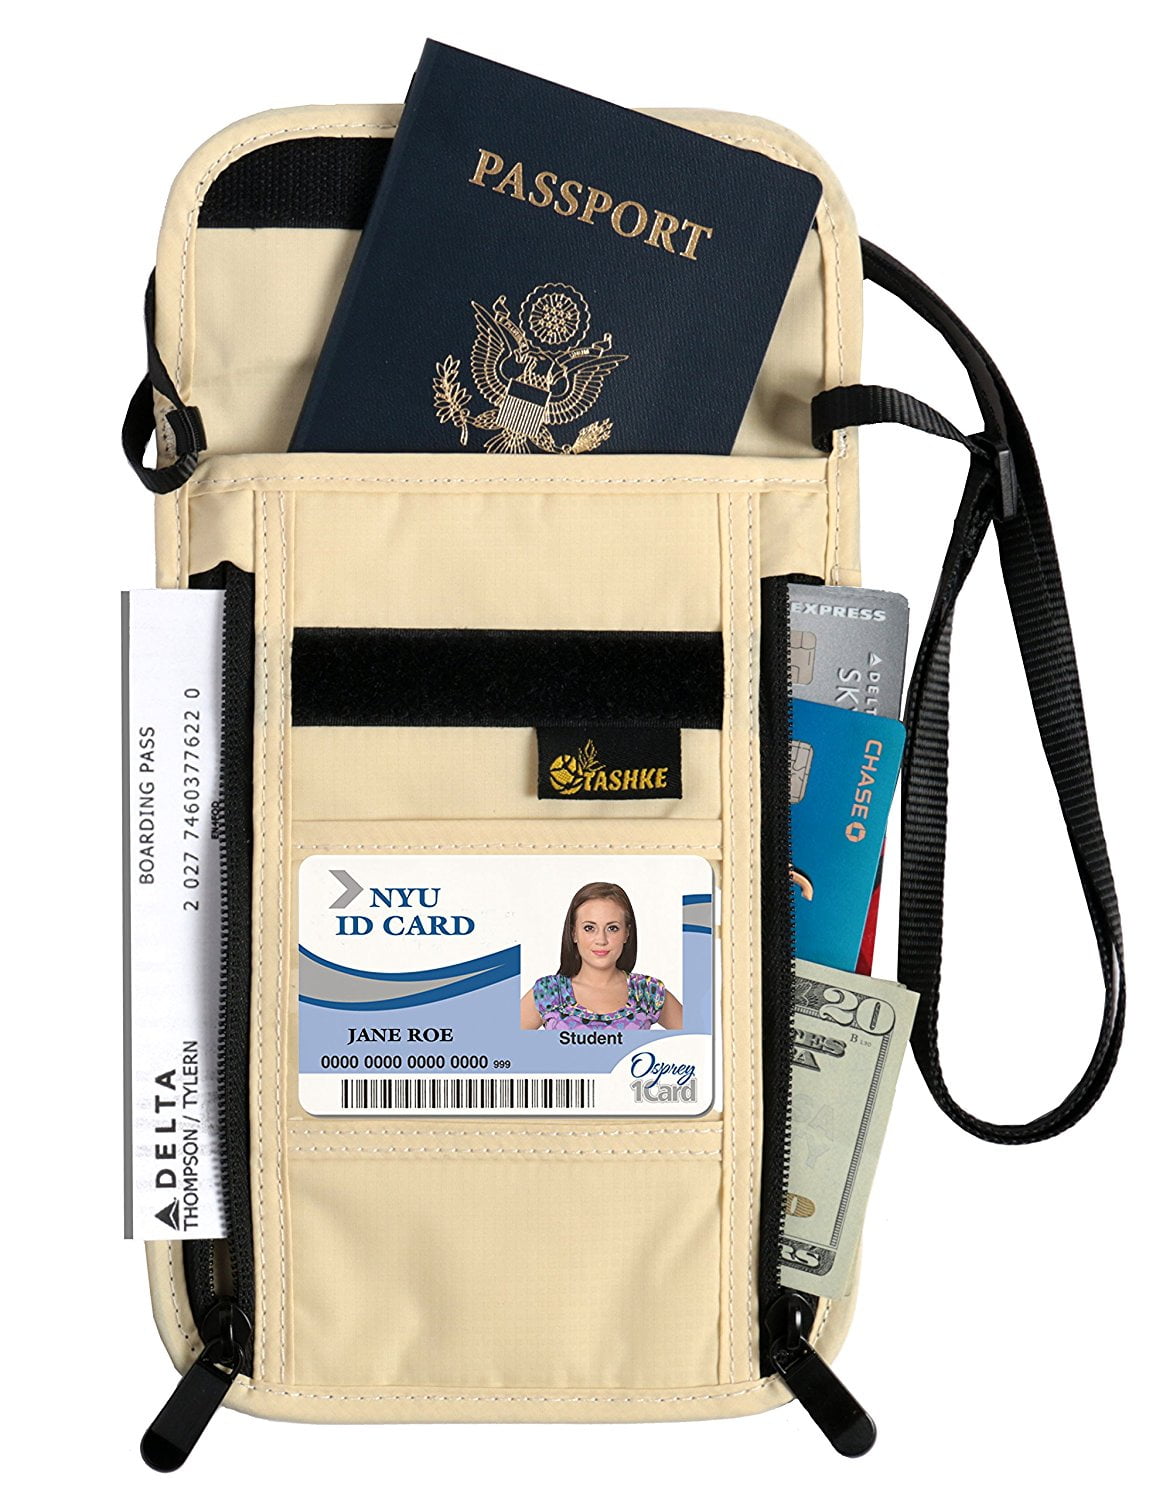 Premium Hidden Security Travel Wallet Pouch Organizer Case with